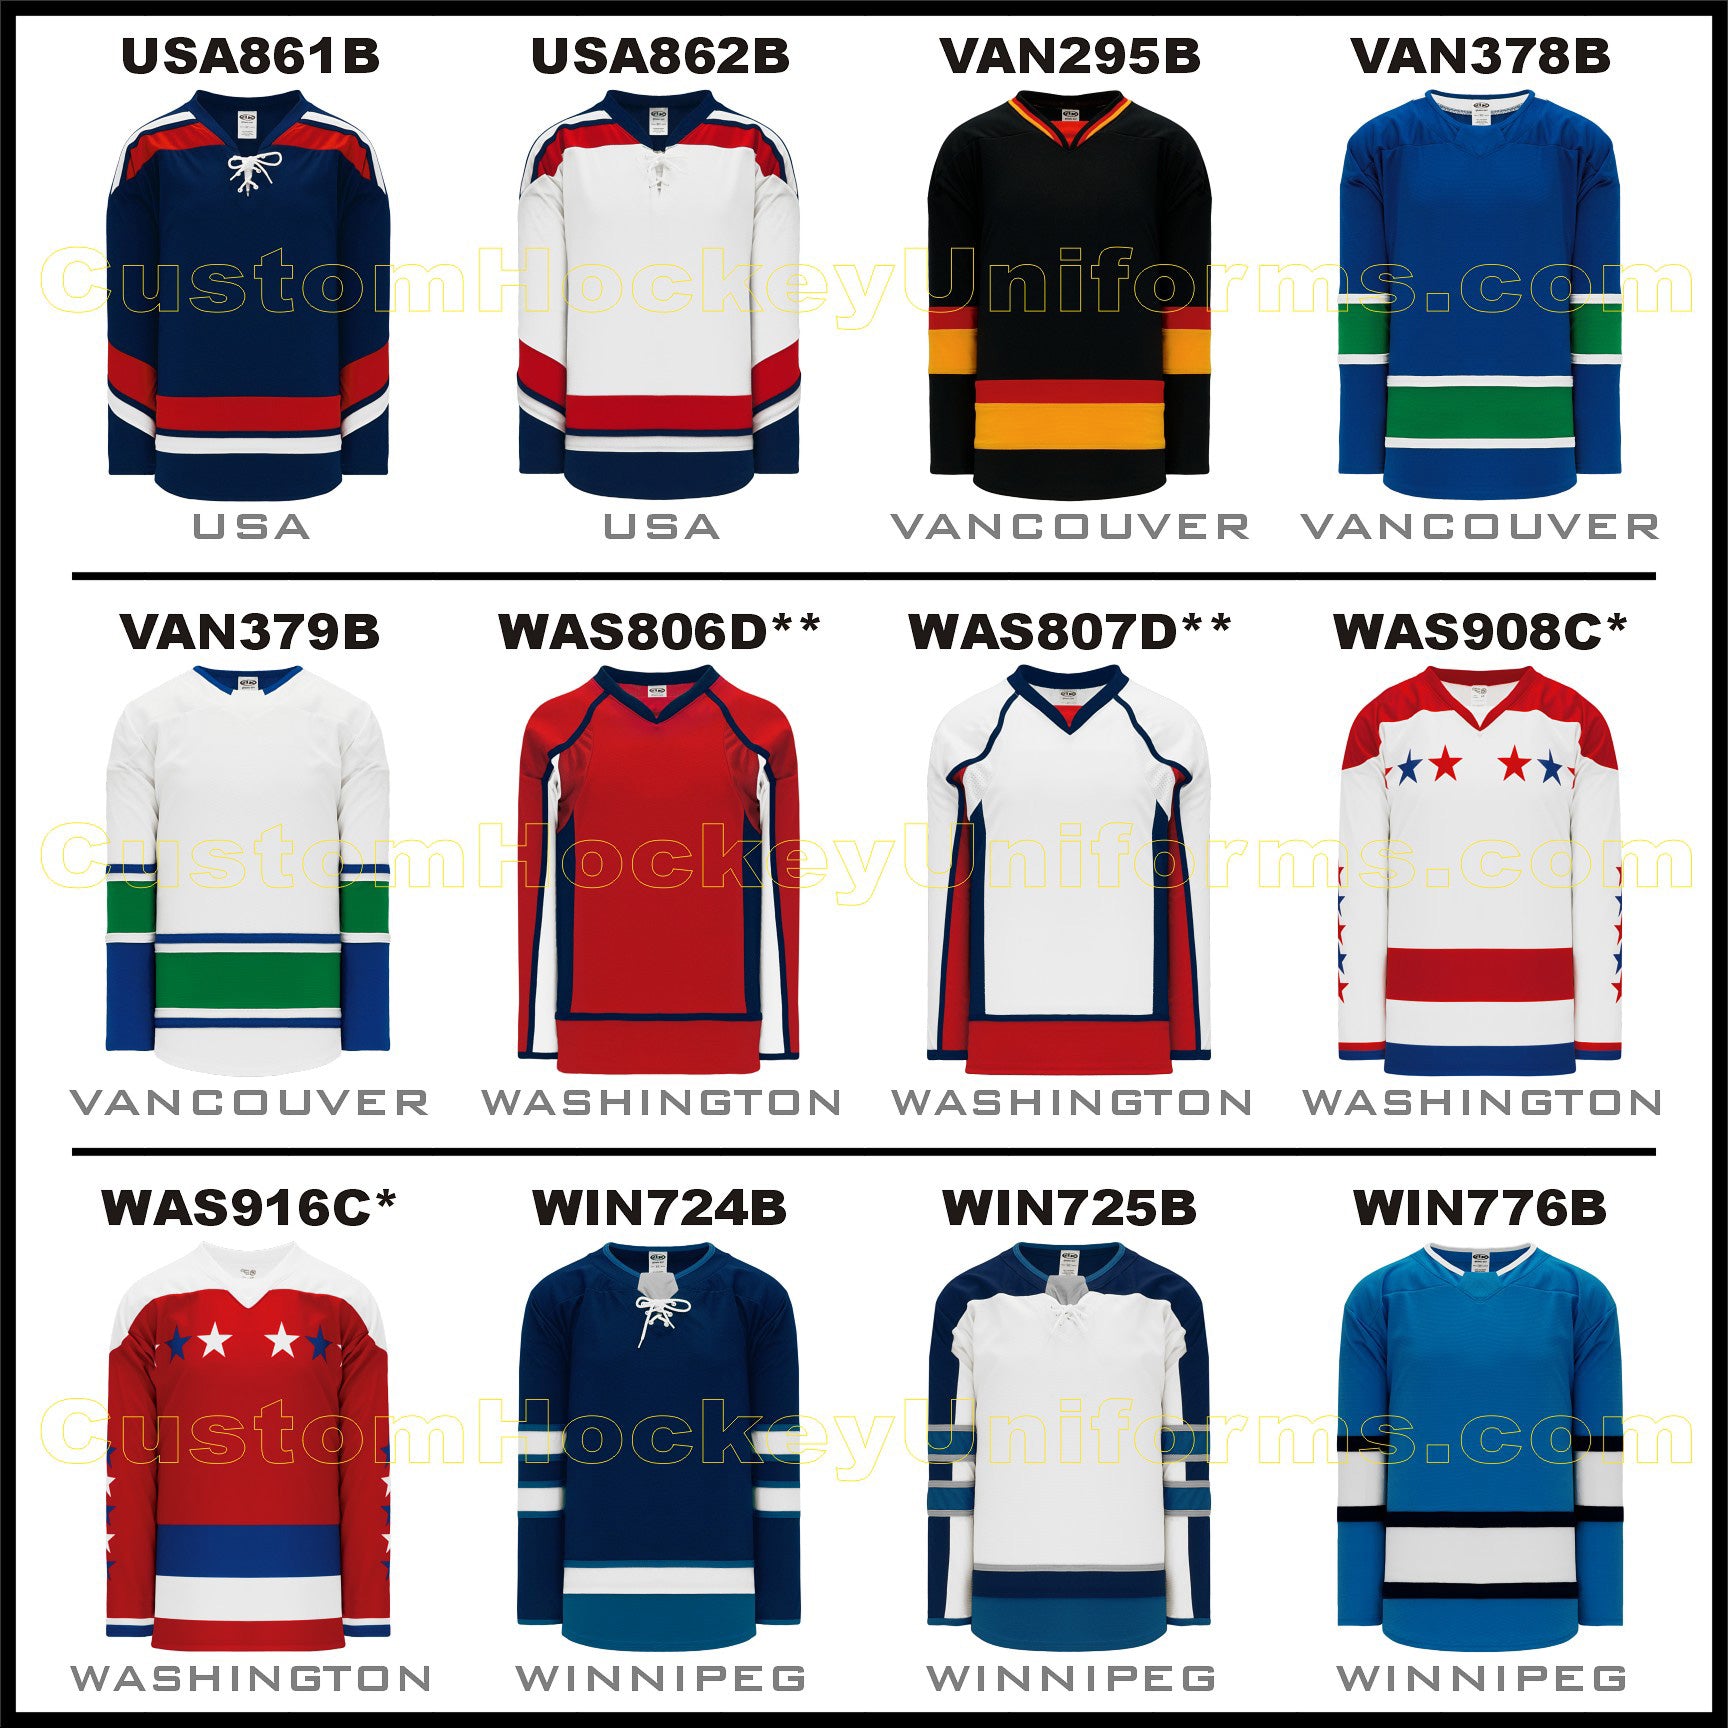 Custom Hockey Jerseys In Chicago: Jerseys For Any Level